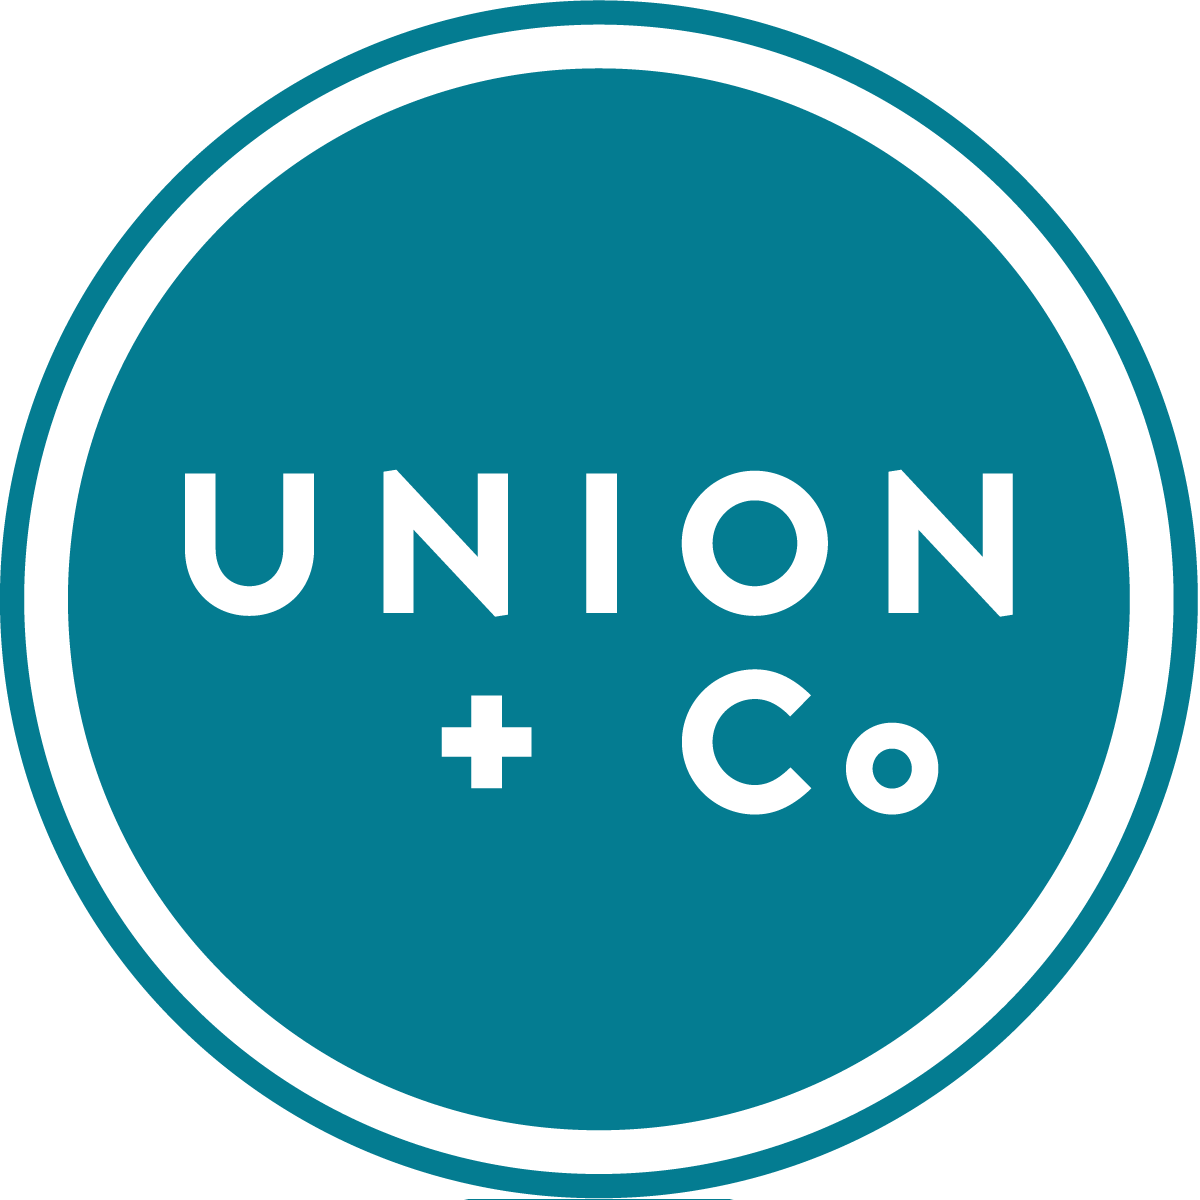 Union + Co